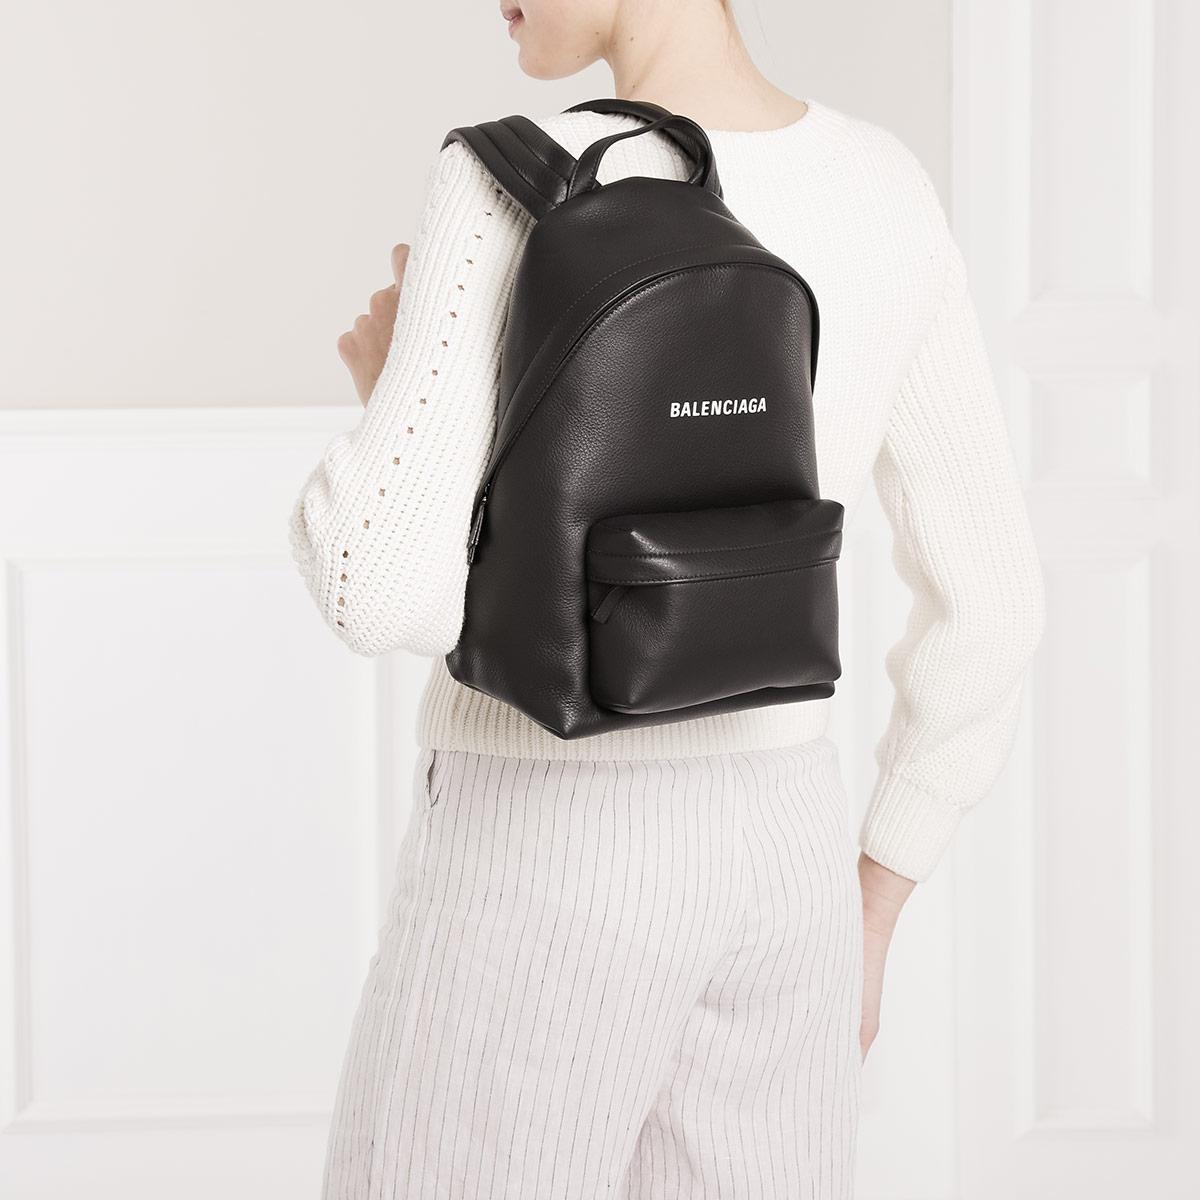 balenciaga small backpack